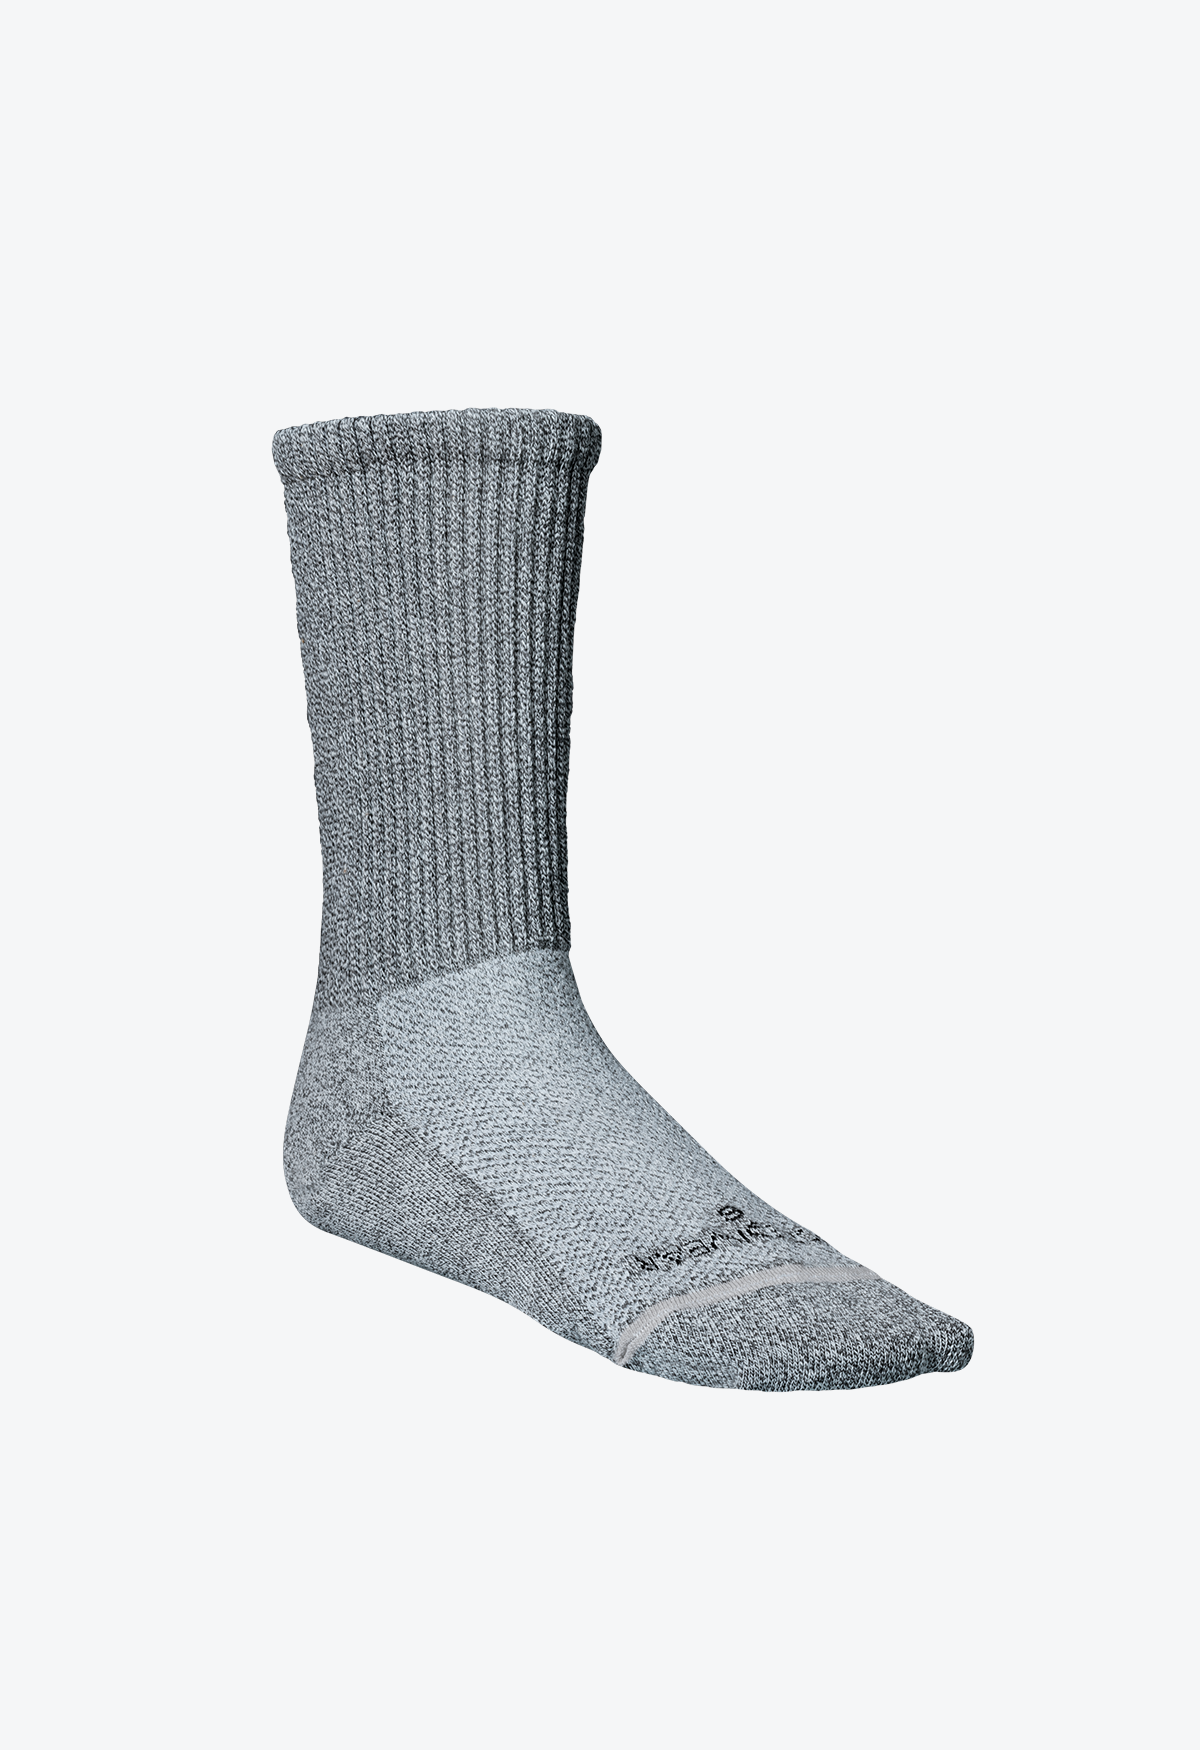 Incrediwear Circulation Socks – Incrediwear Inc